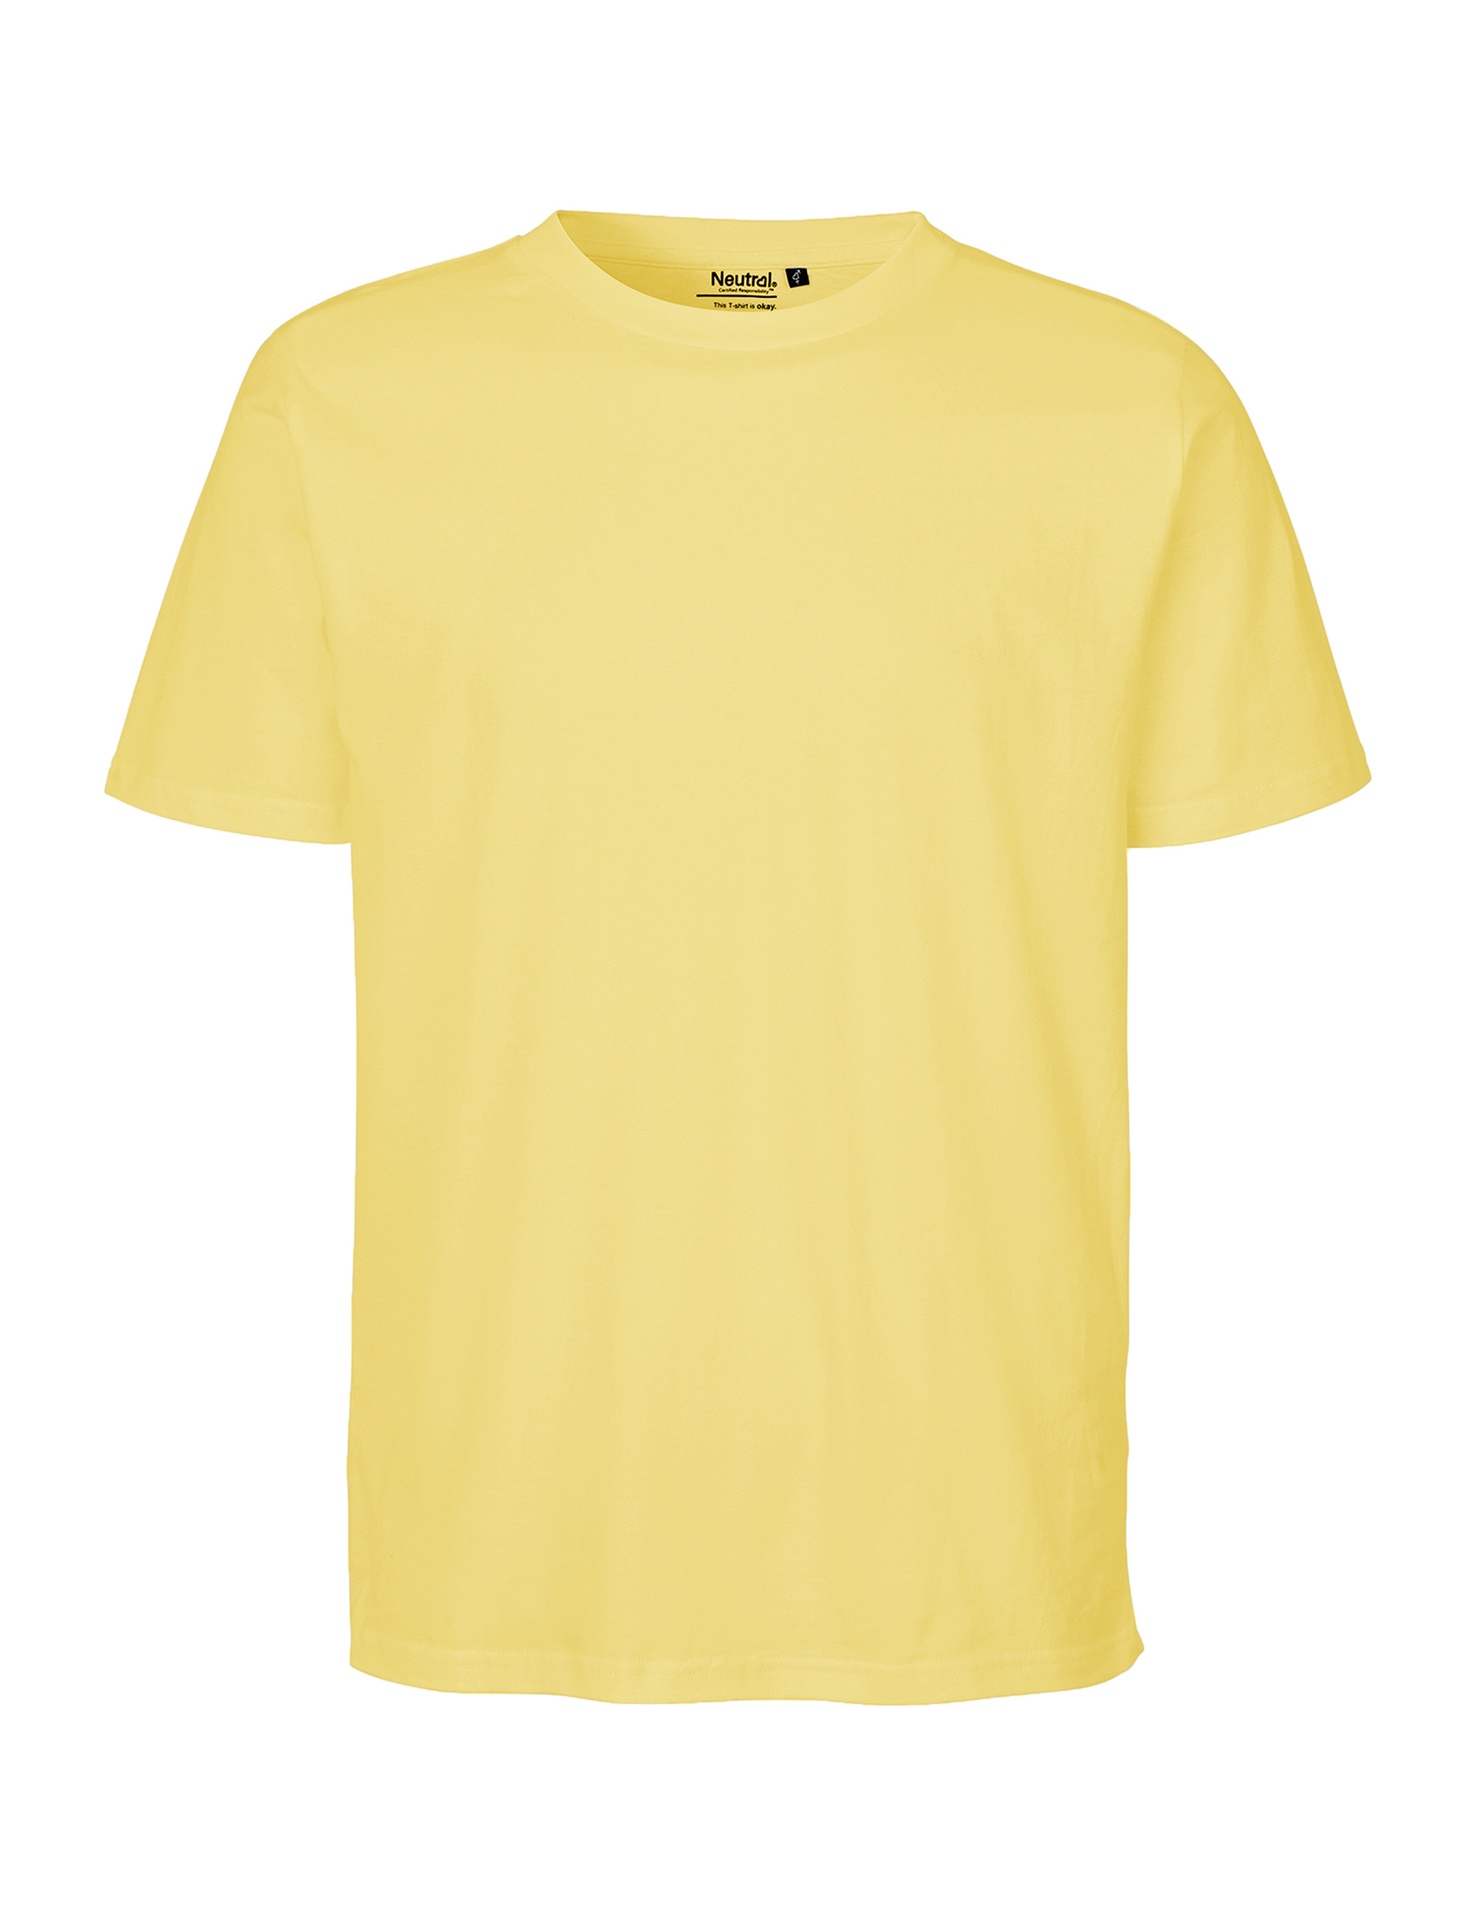 [PR/06716] Unisex Regular T-Shirt (4XL, Teal 52)